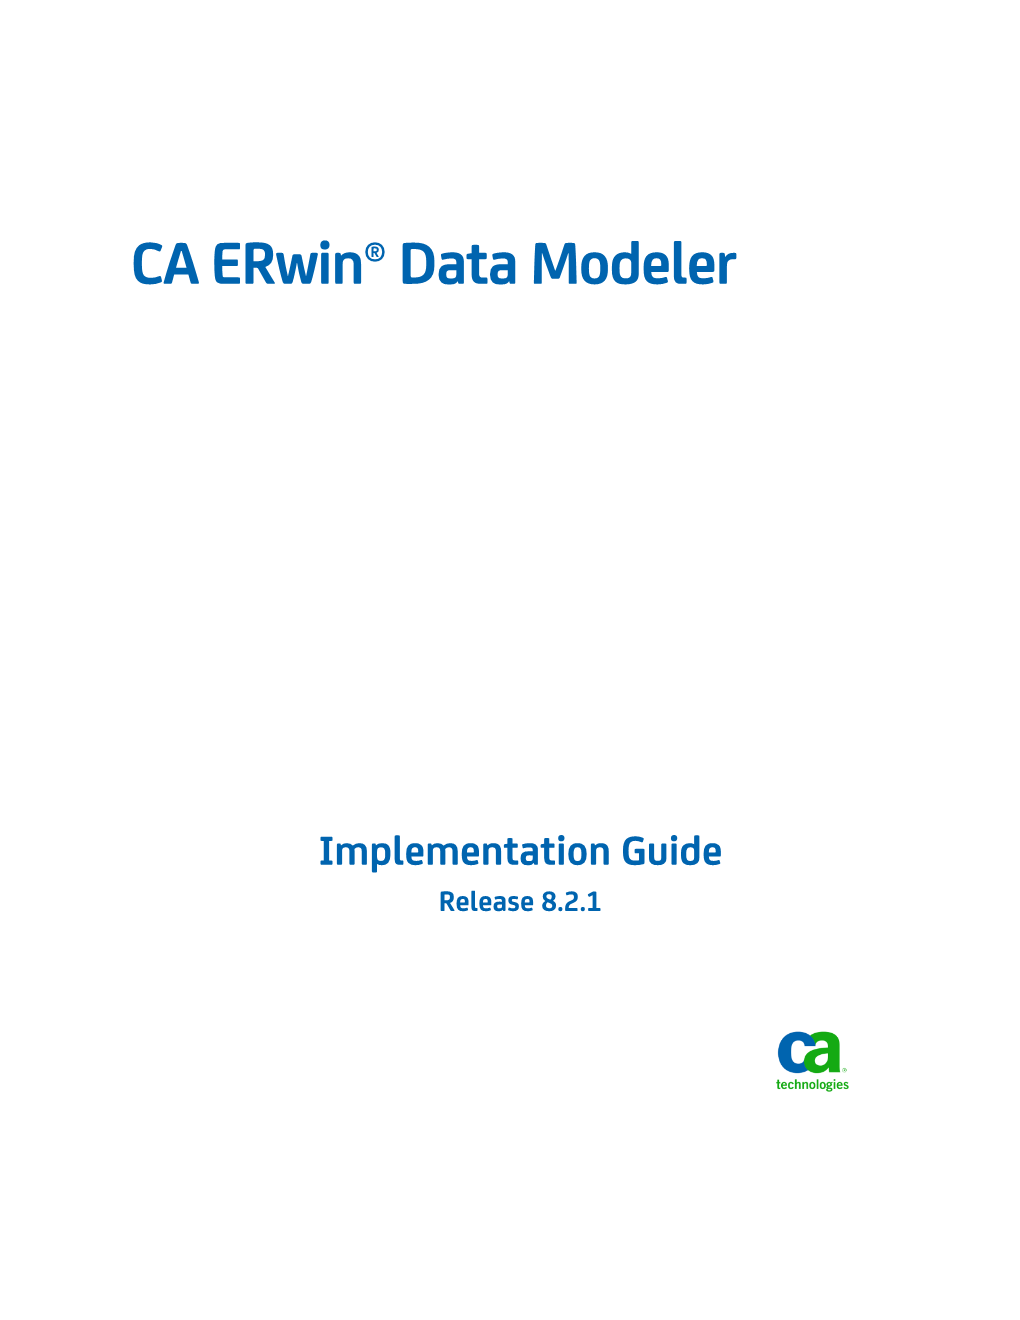 CA Erwin Data Modeler Implementation Guide